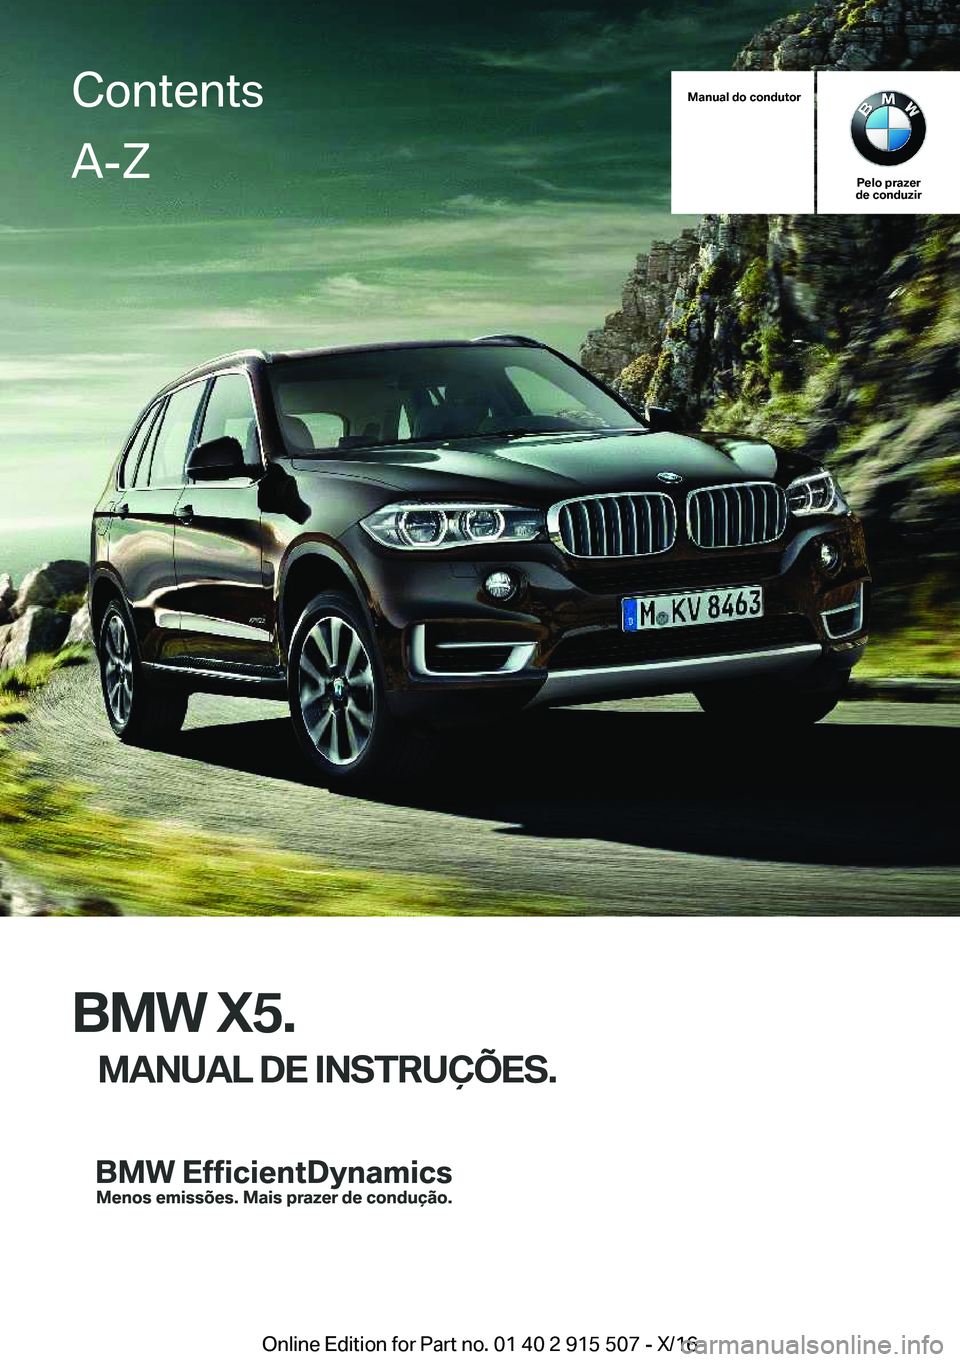 BMW X5 2017  Manual do condutor (in Portuguese) �M�a�n�u�a�l��d�o��c�o�n�d�u�t�o�r
�P�e�l�o��p�r�a�z�e�r
�d�e��c�o�n�d�u�z�i�r
�B�M�W��X�5�.
�M�A�N�U�A�L��D�E��I�N�S�T�R�U�